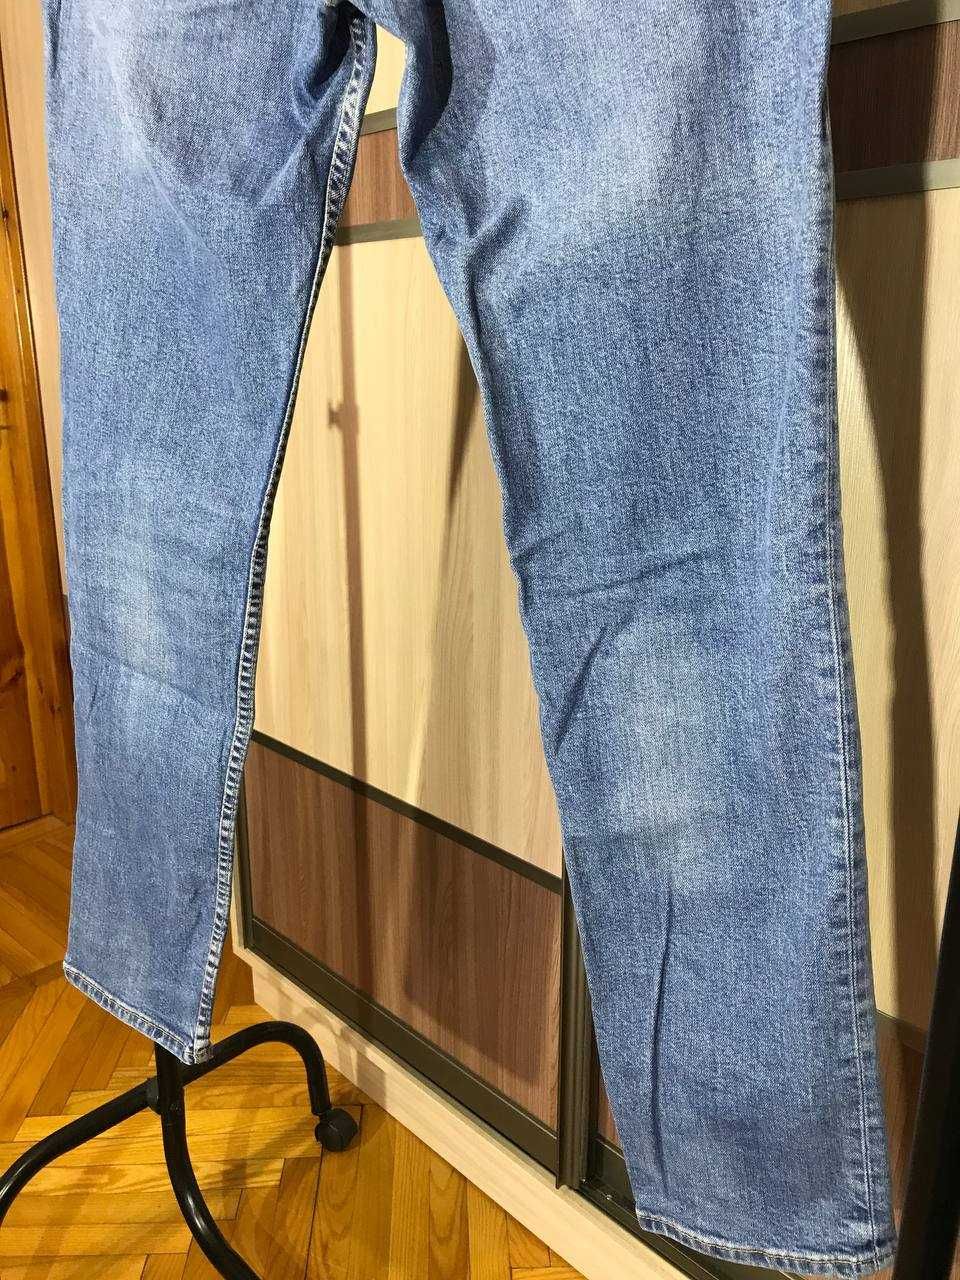 Мужские джинсы штаны Levi's 511 Size 32/34 оригинал